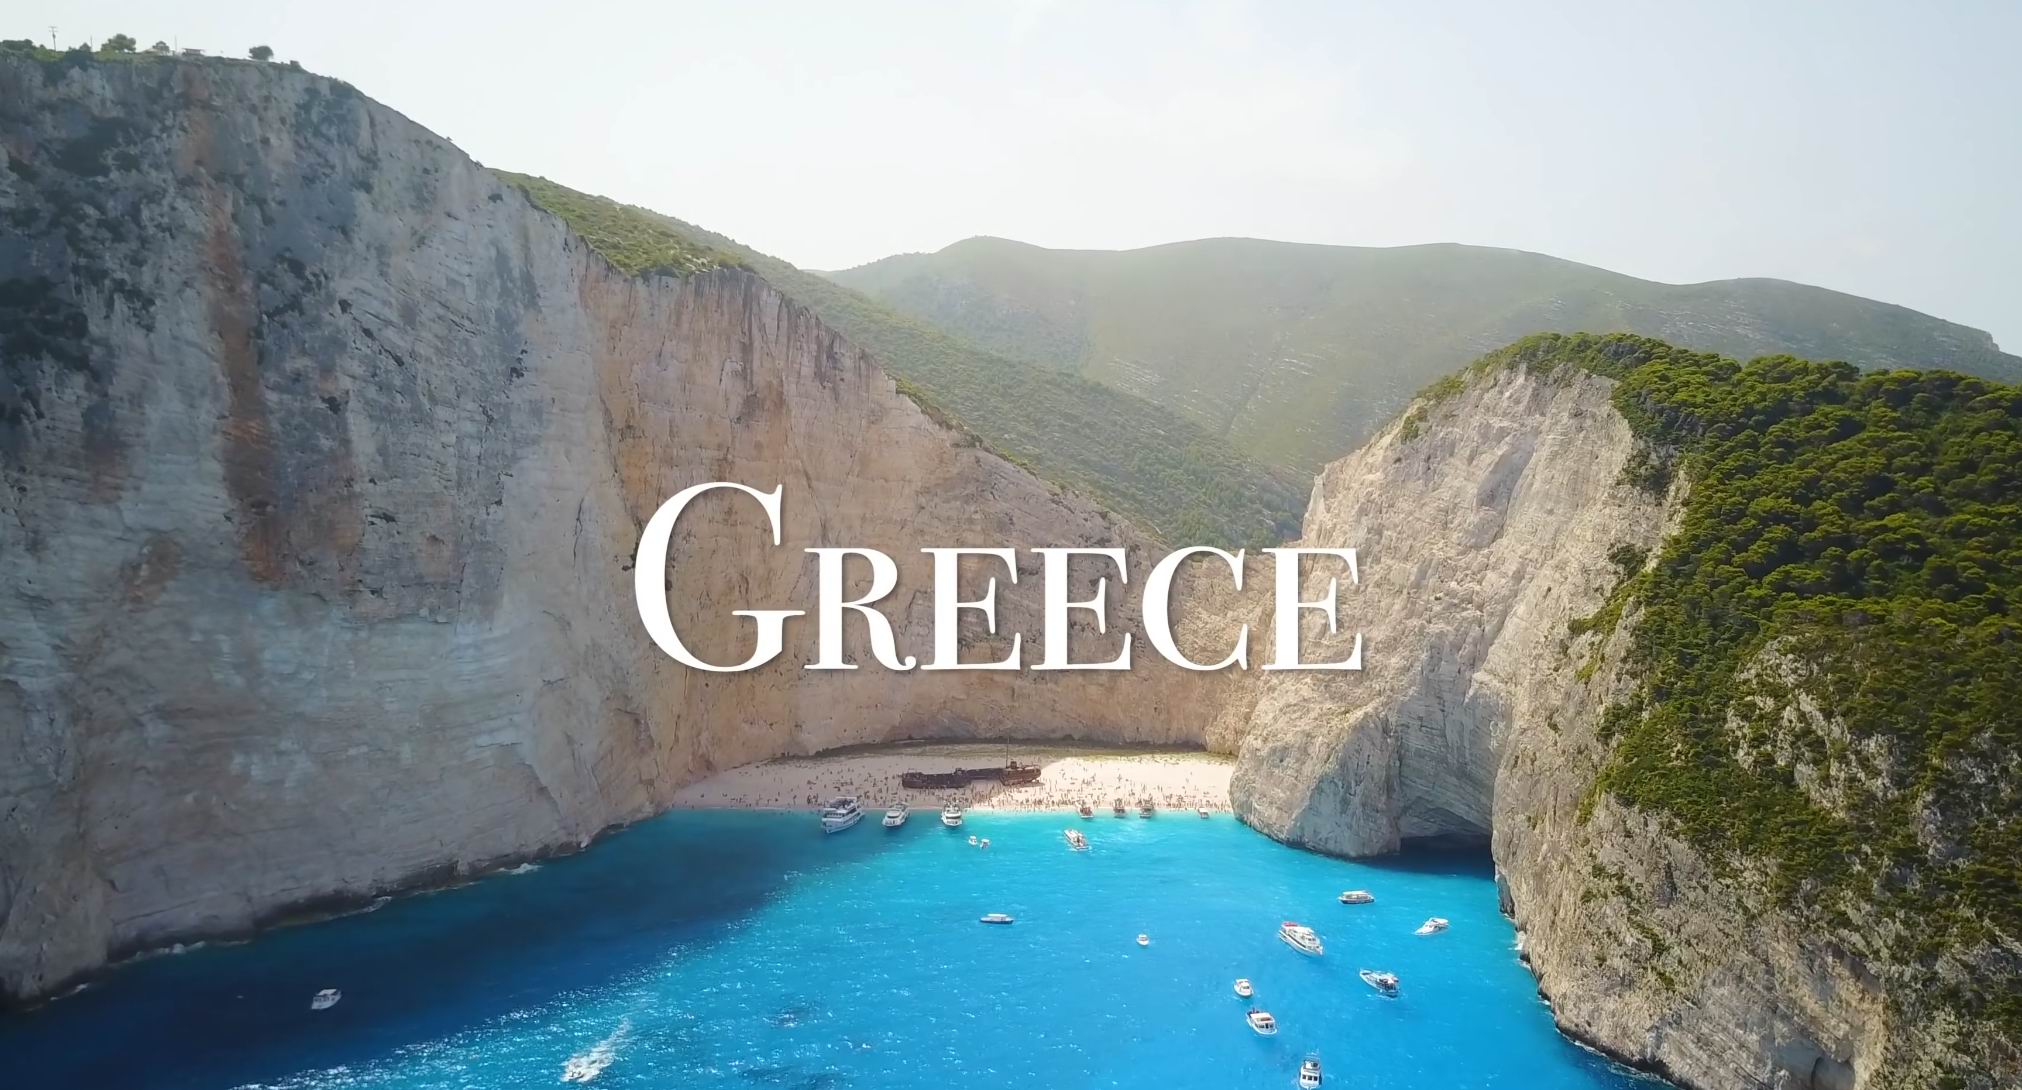 Греция 4K - Живописный Расслабляющий Фильм с Успокаивающей музыкой. 2